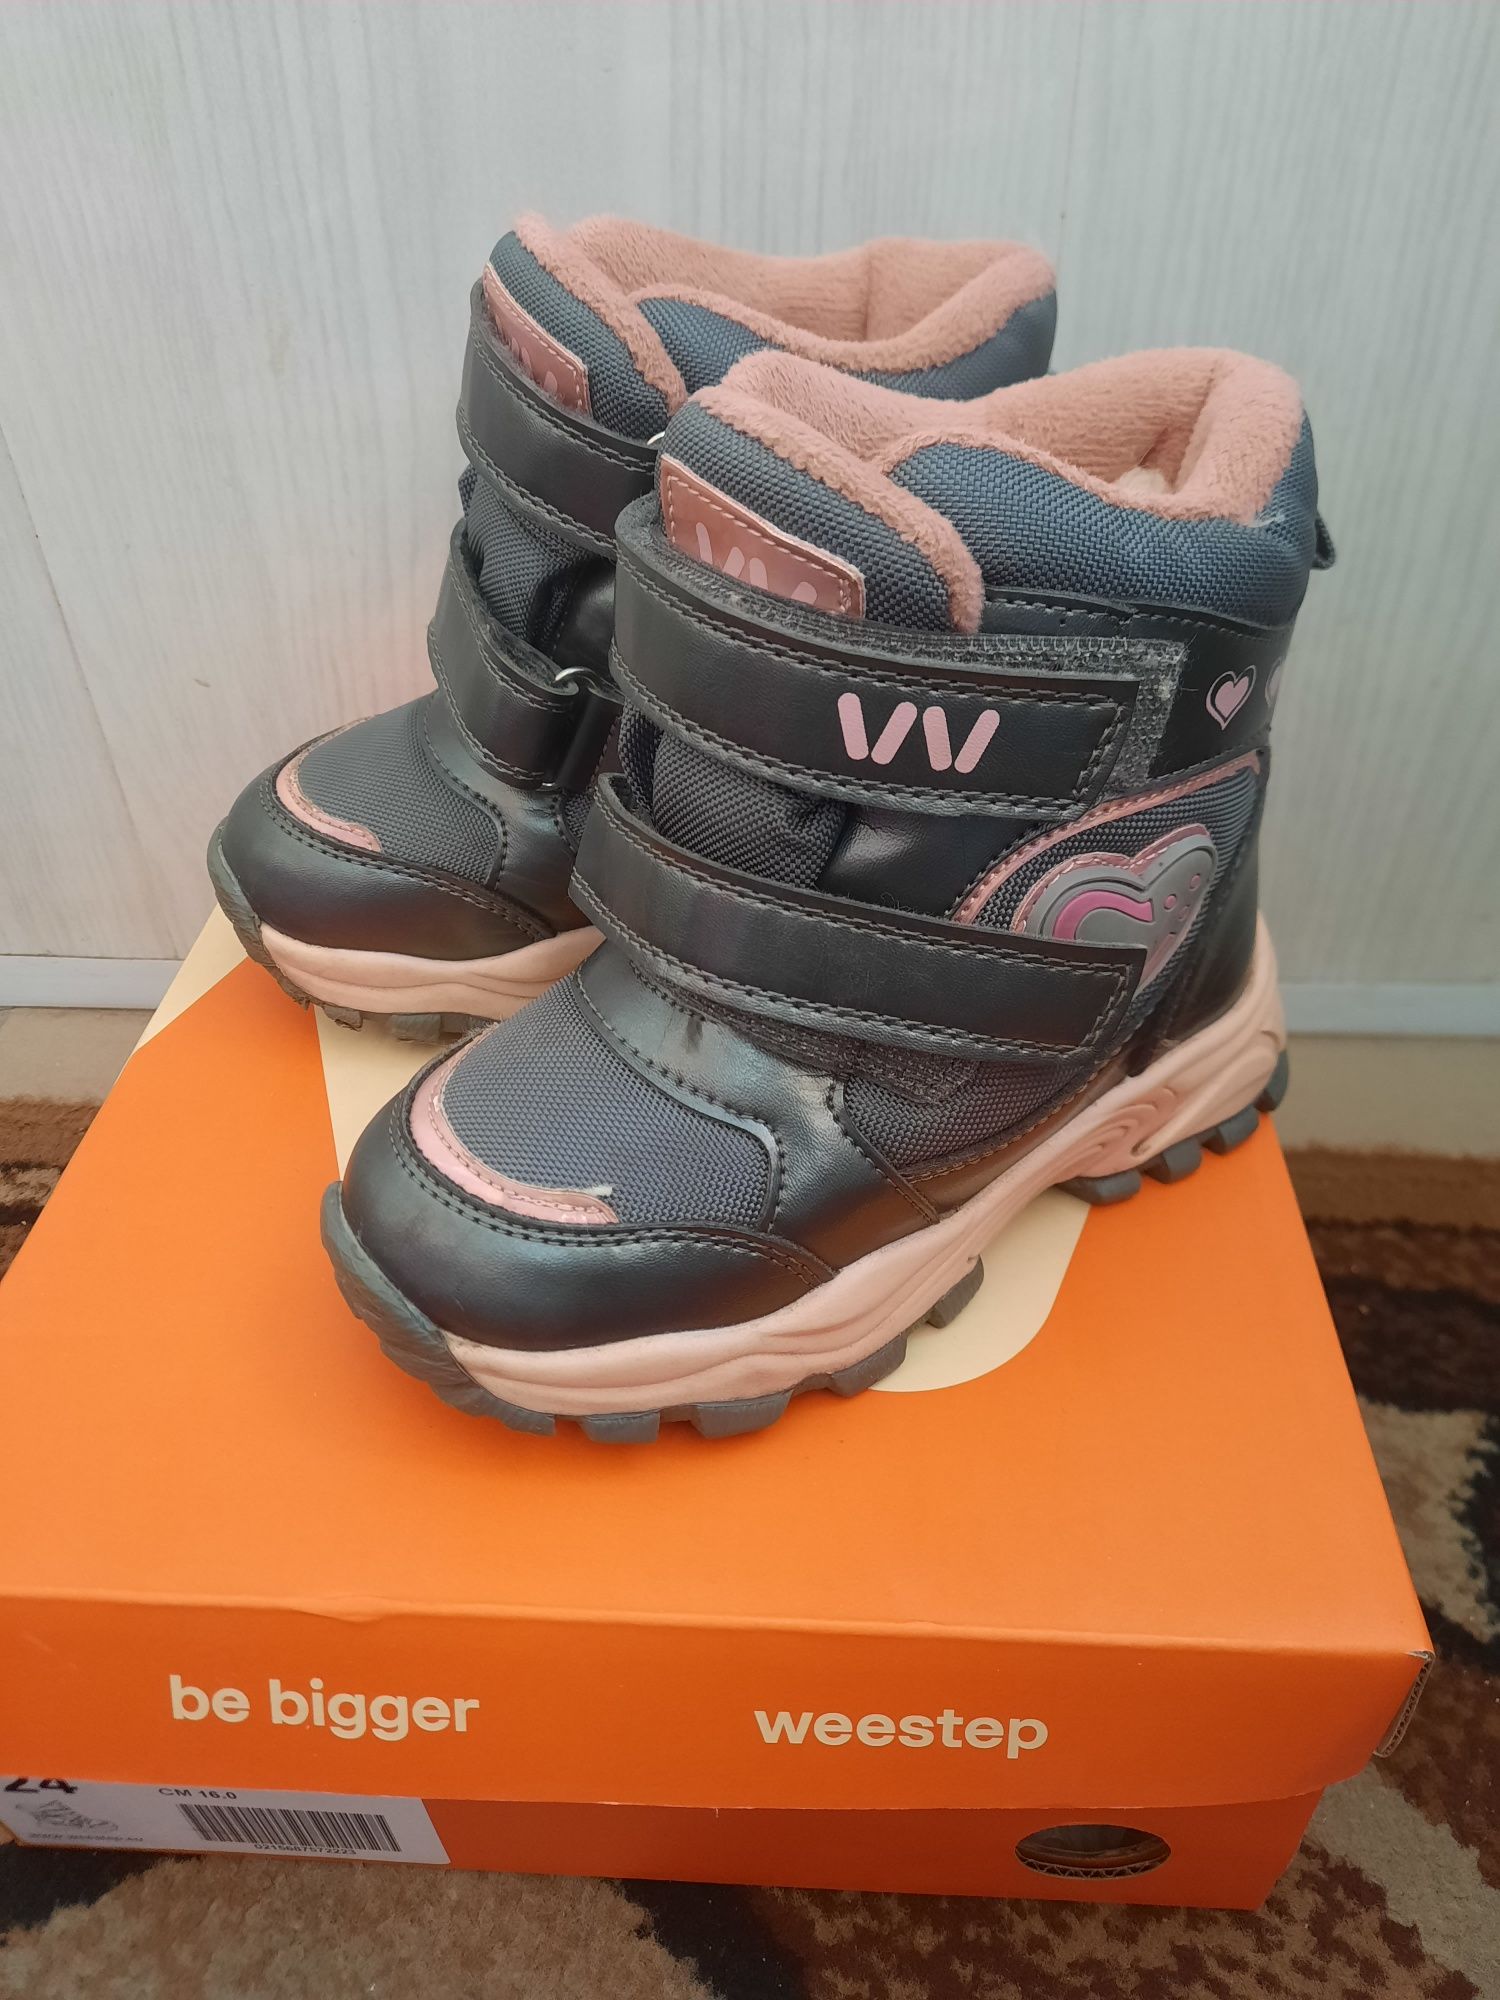 Дитячі зимові ботинки "Weestep"